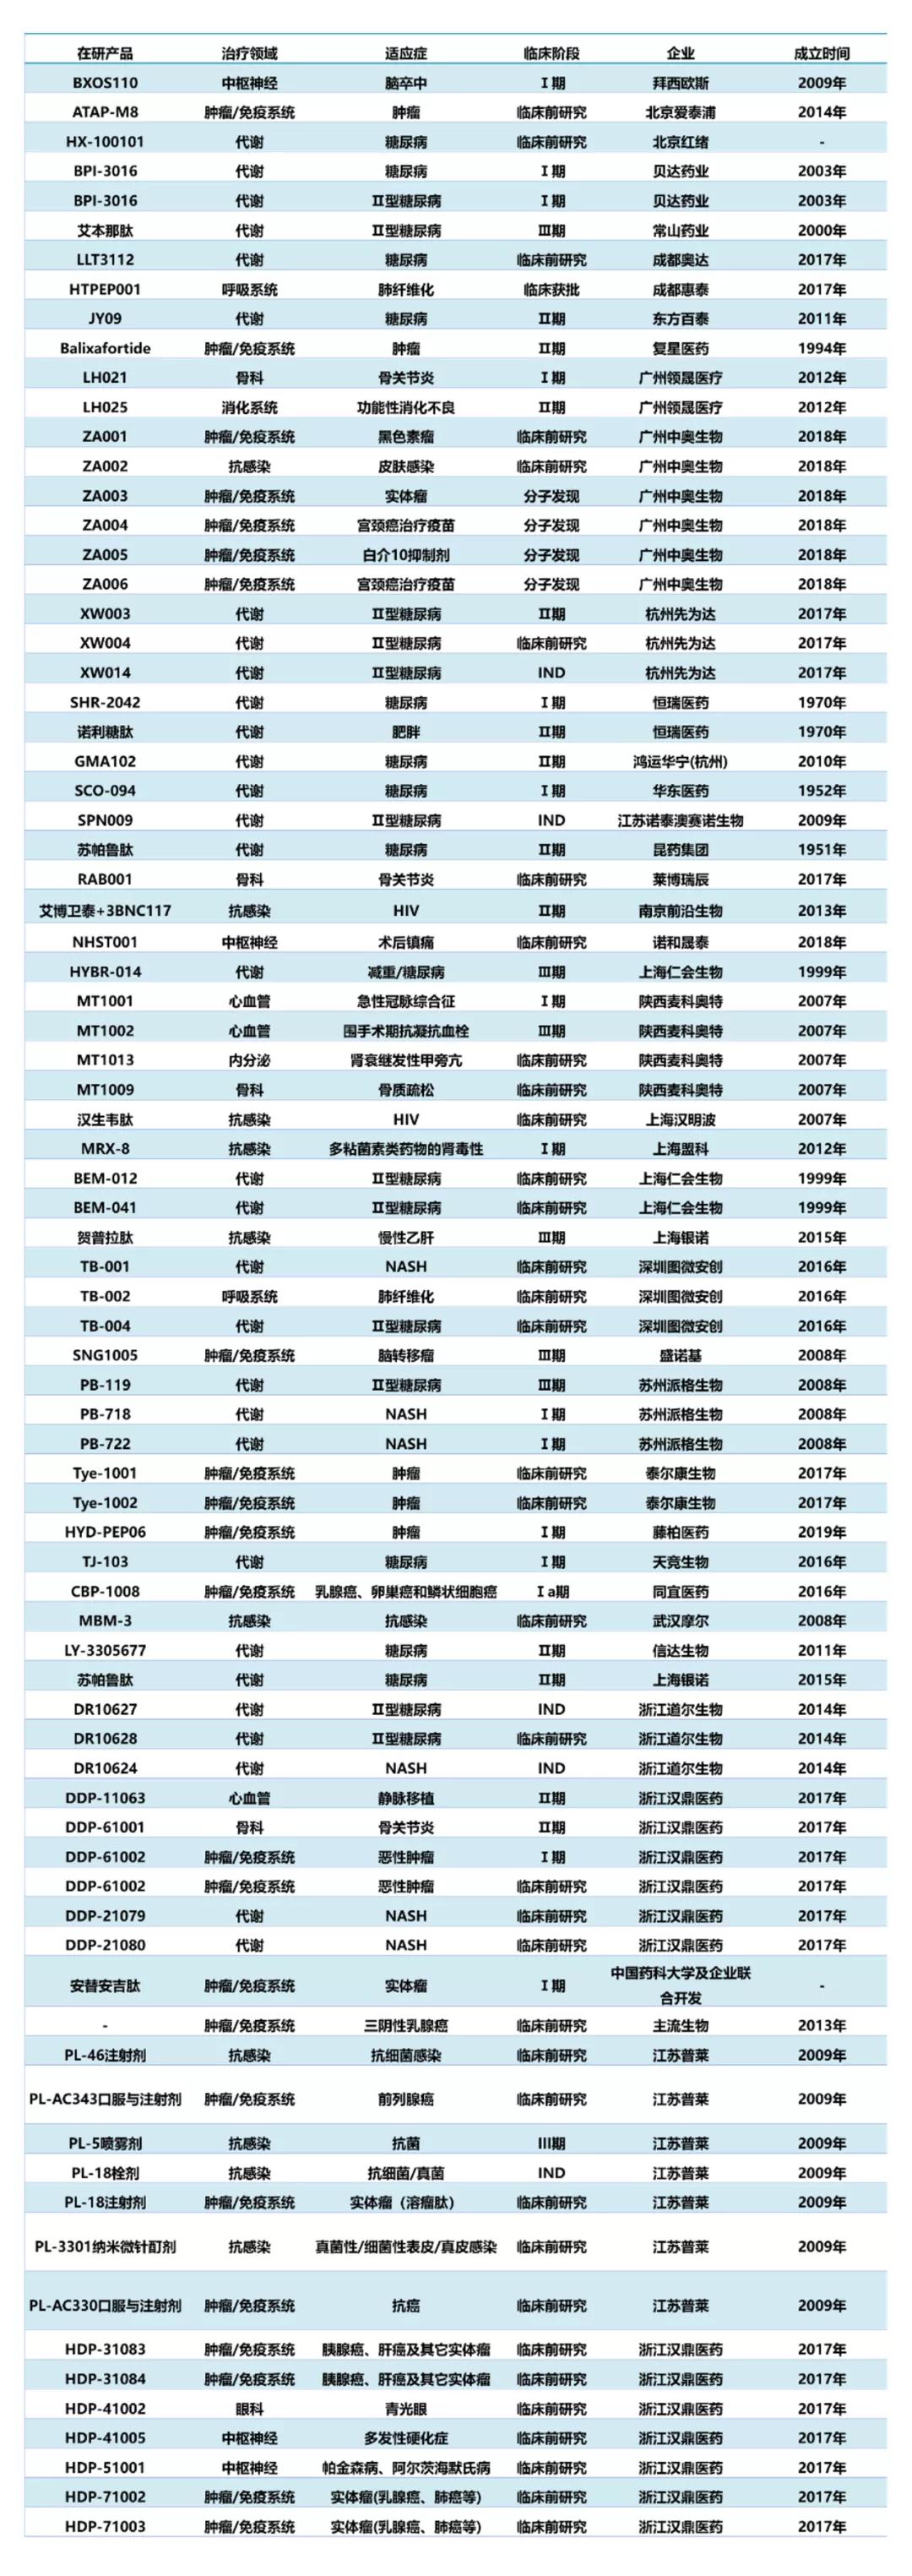 表1.中国多肽创新药研究进展汇总(不完全统计)